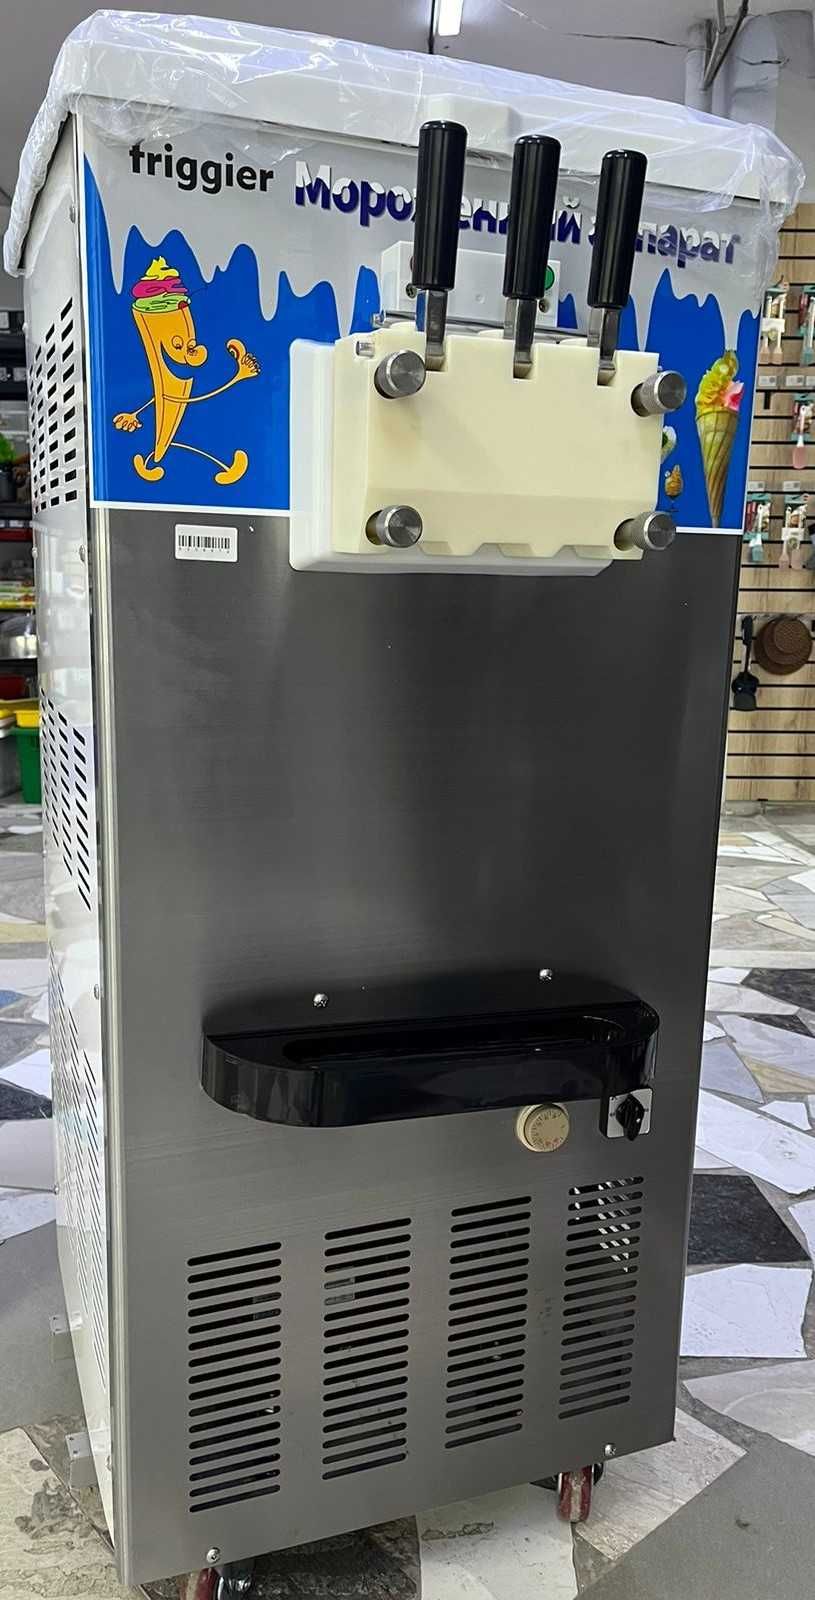 Фризер для изготовления мороженного KD-988